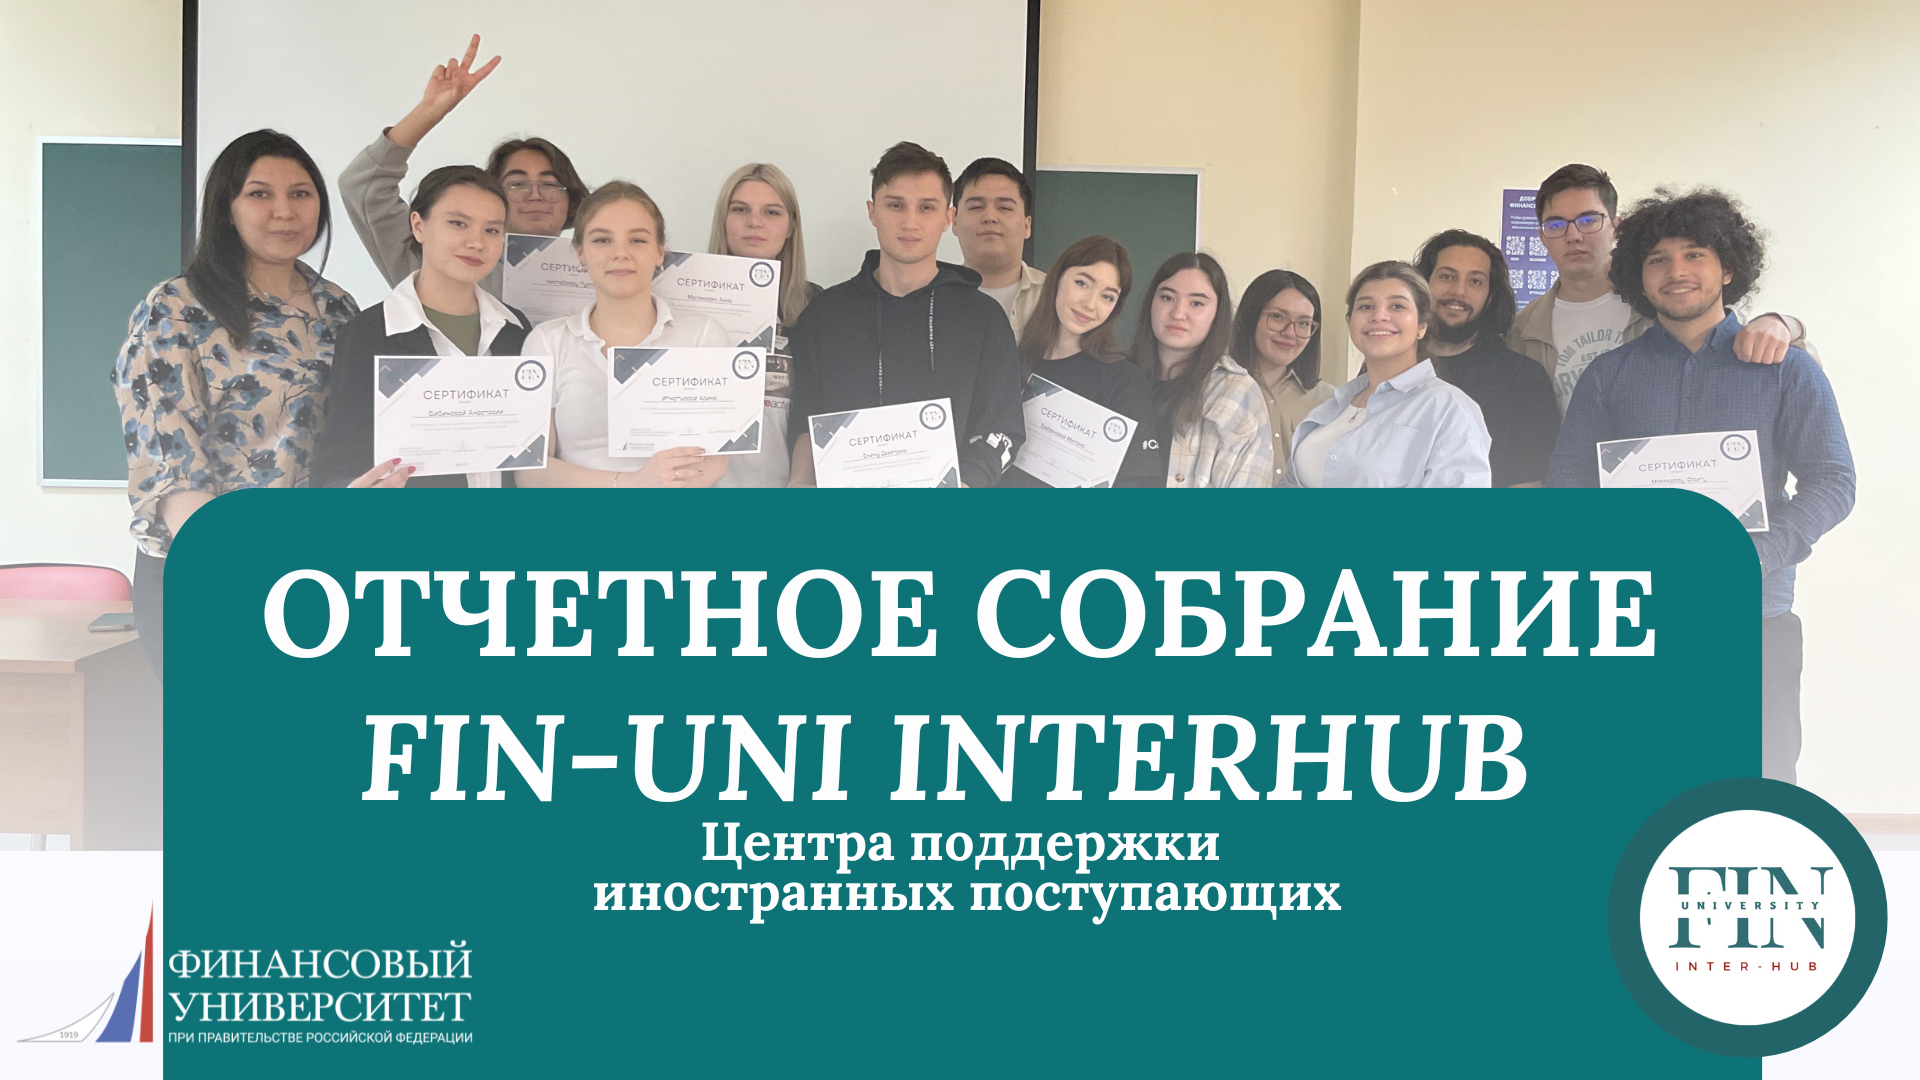 Отчетное собрание Центра поддержки иностранных поступающих Fin-Uni InterHub